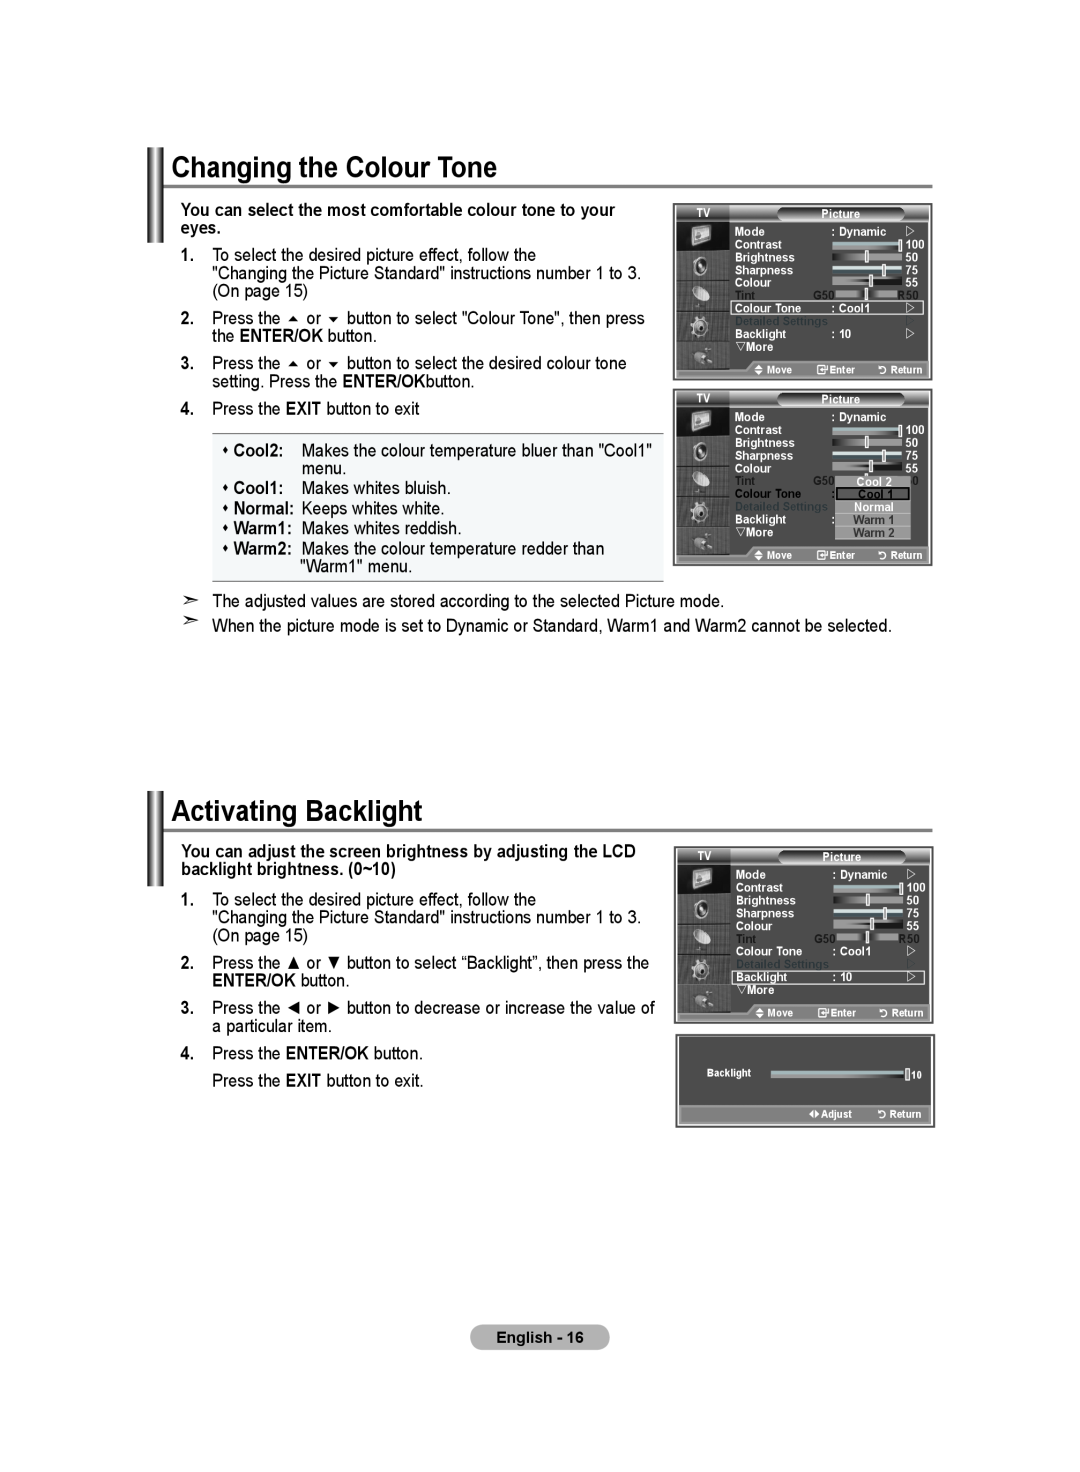 Samsung LE40S8, LE46S8, LE37S8, LE32S8, LE26S8 manual Changing the Colour Tone, Activating Backlight, ENTER/OK button 